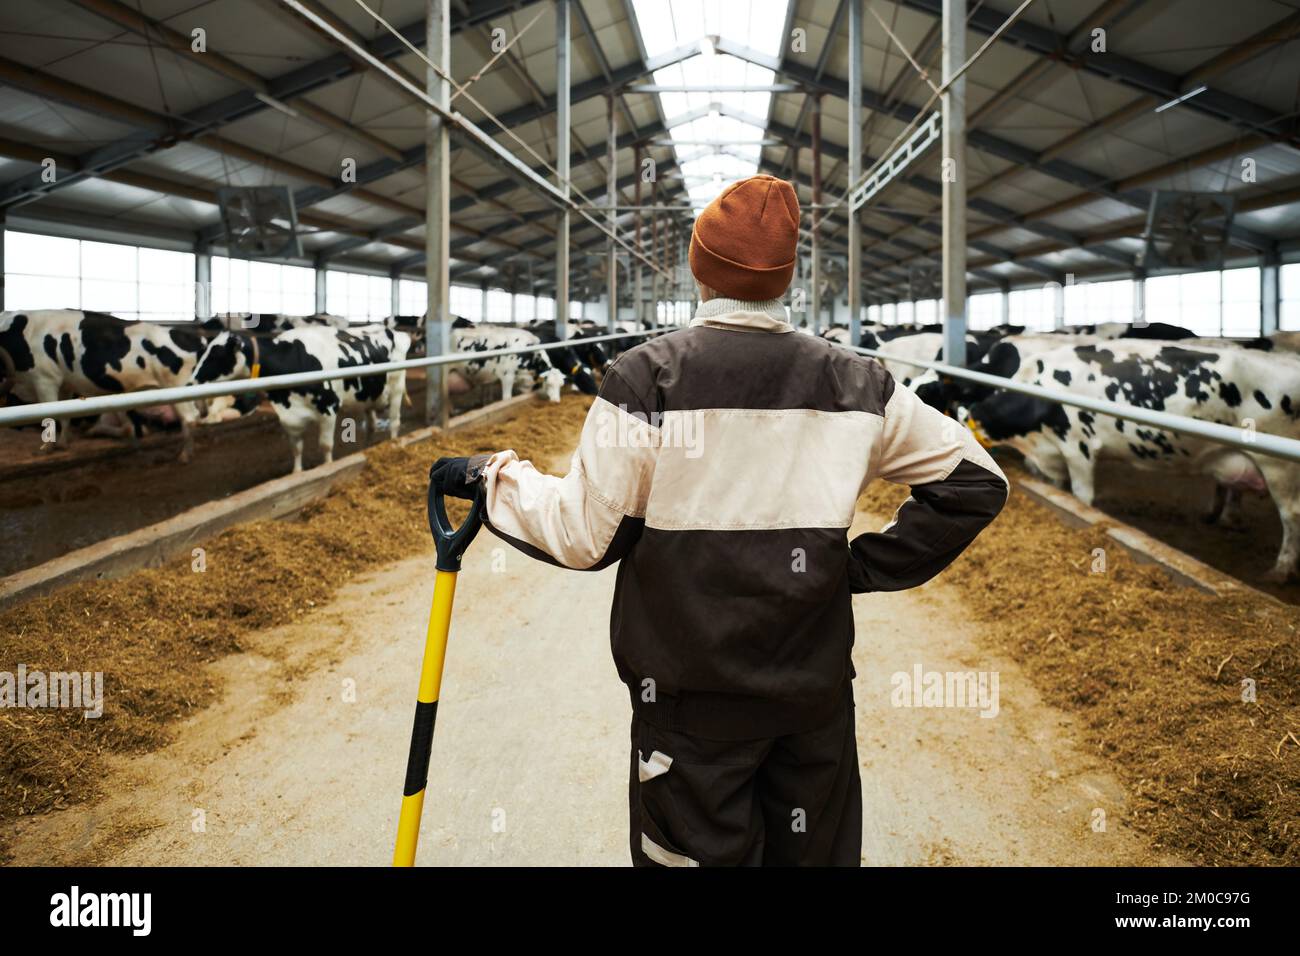 Vue arrière de la jeune femme travailleuse de la ferme-vache avec un outil de travail debout devant une longue allée divisant la ferme en deux hangars avec du bétail Banque D'Images